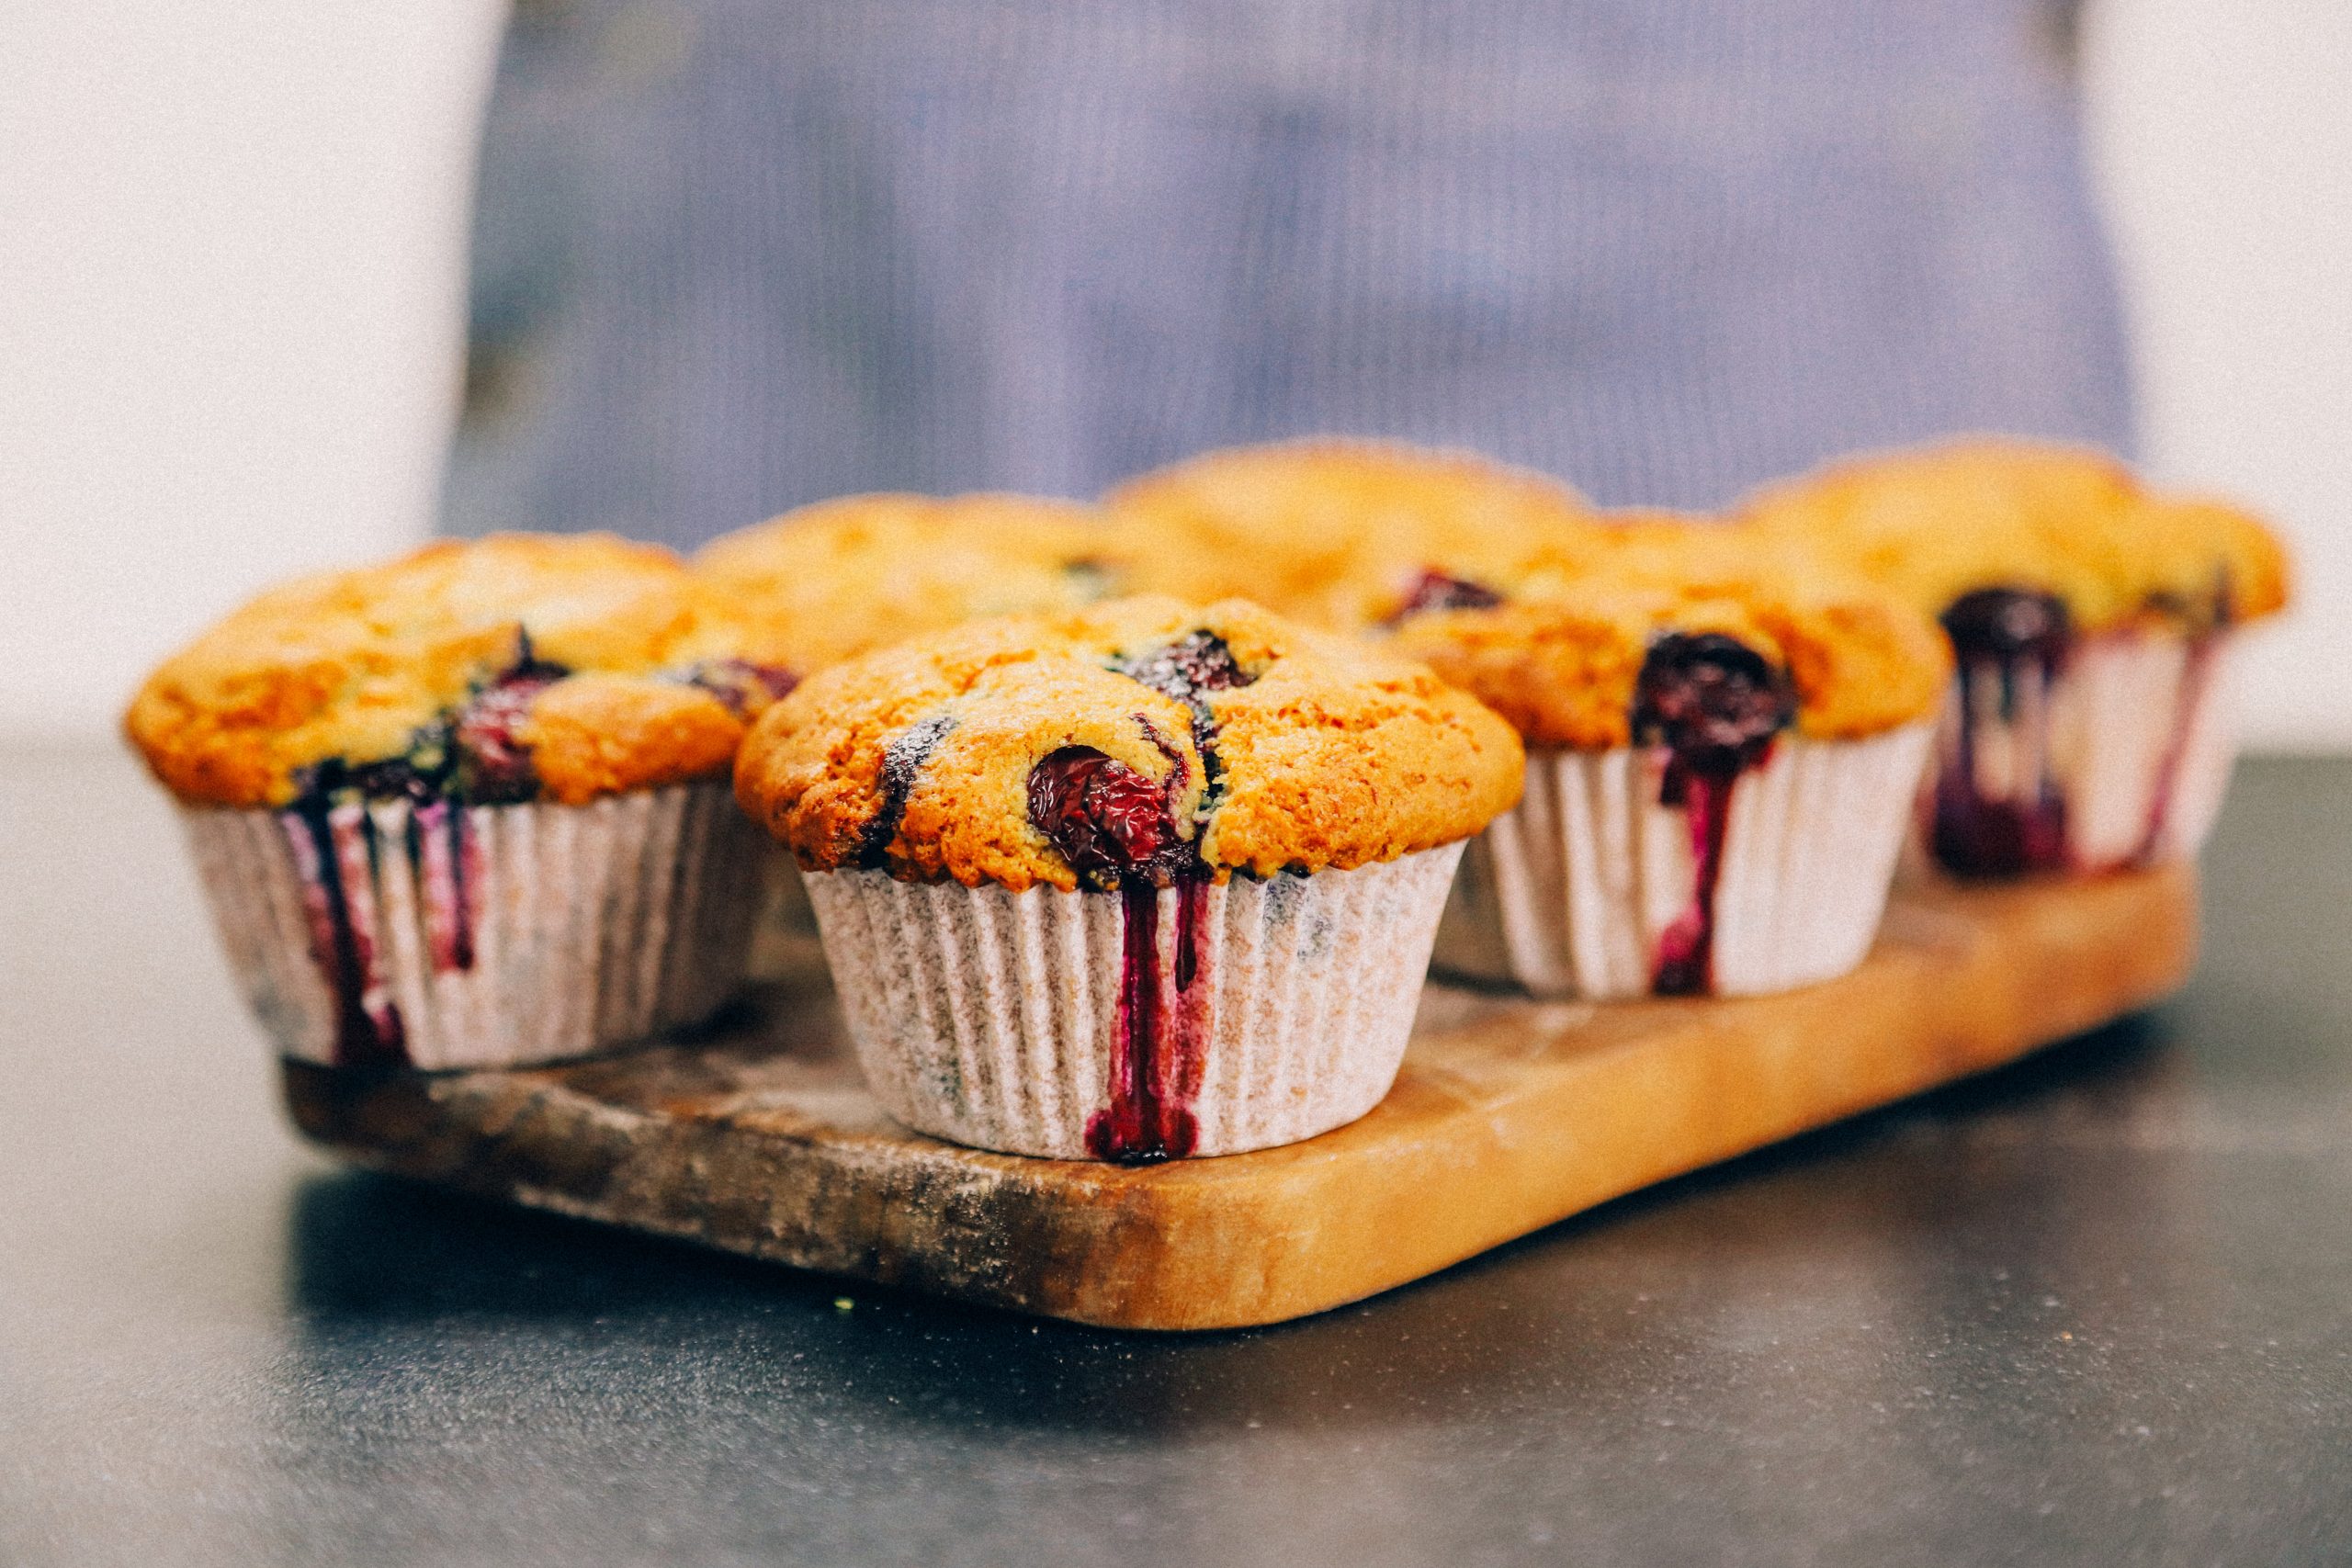 Recept voor vegan blueberry muffins, plantaardige muffins met blauwe bessen